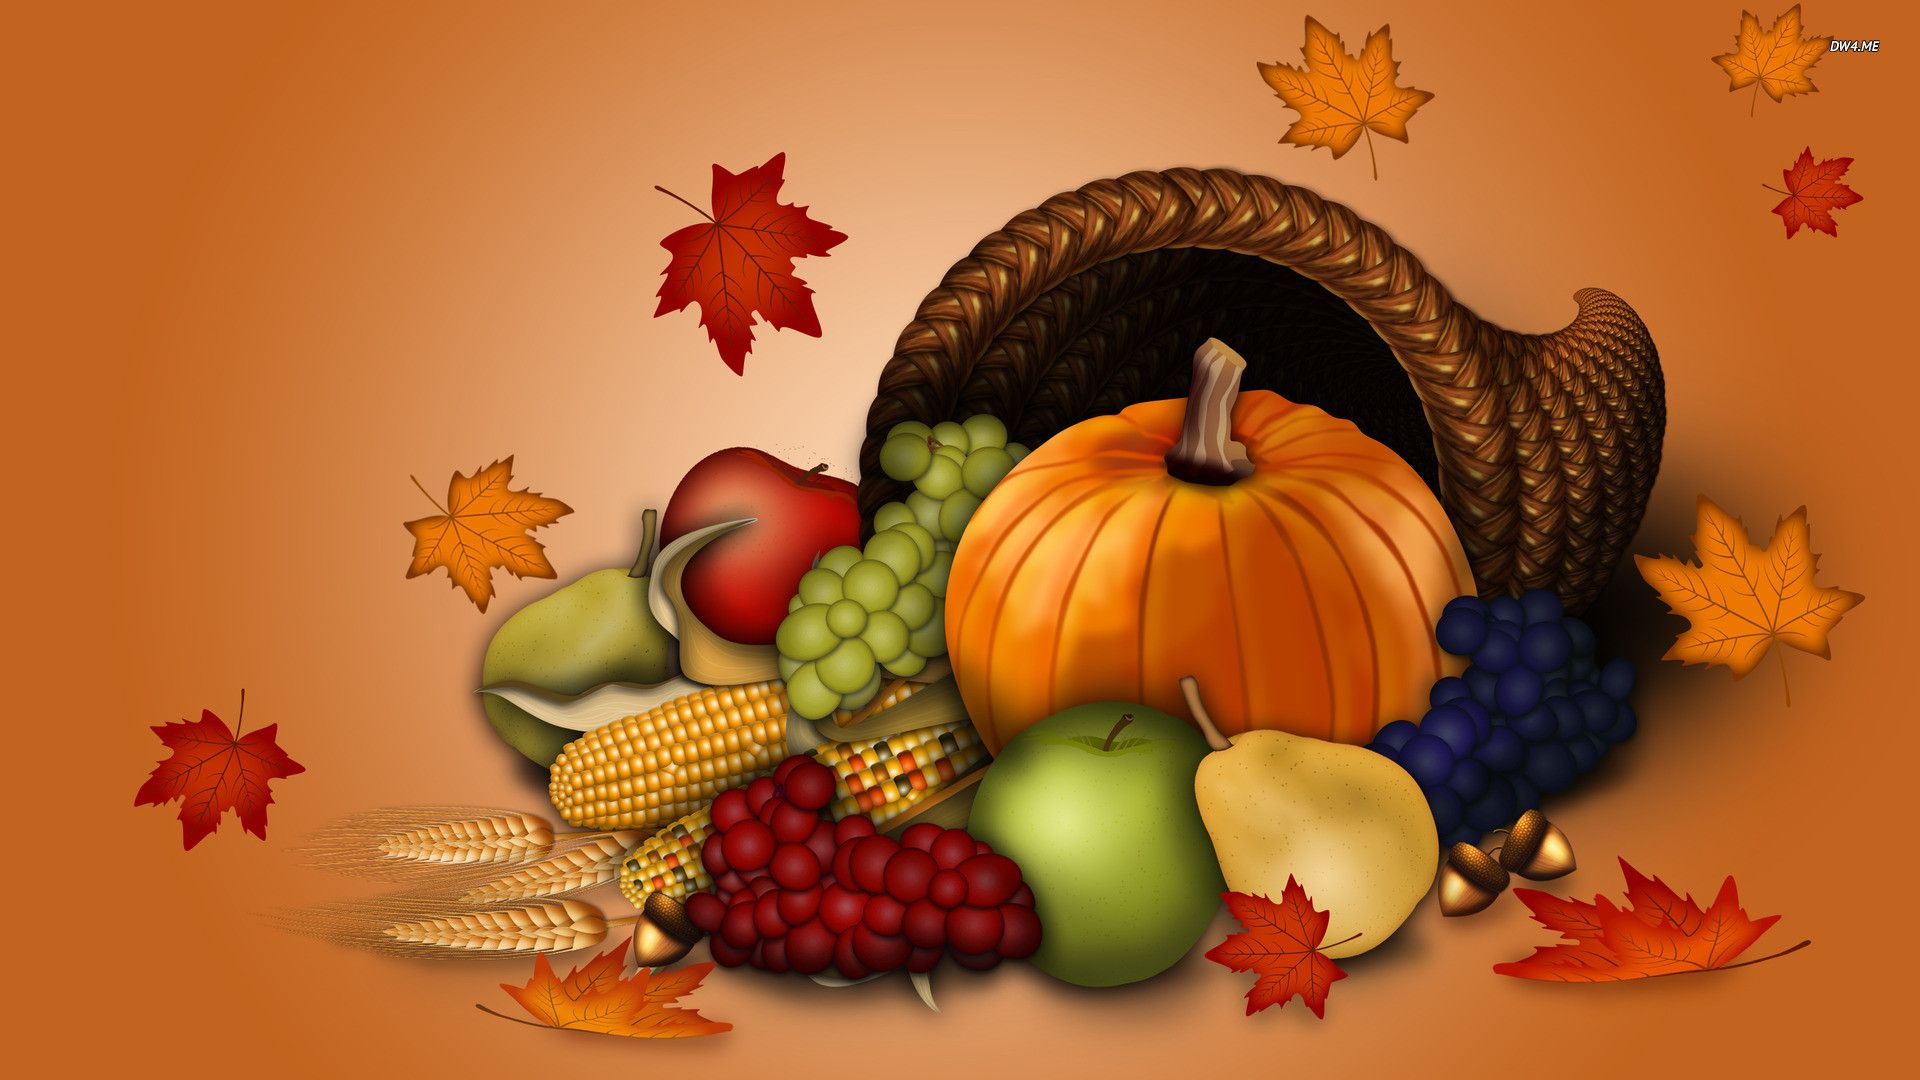 Happy Thanksgiving Desktop Wallpaper Top